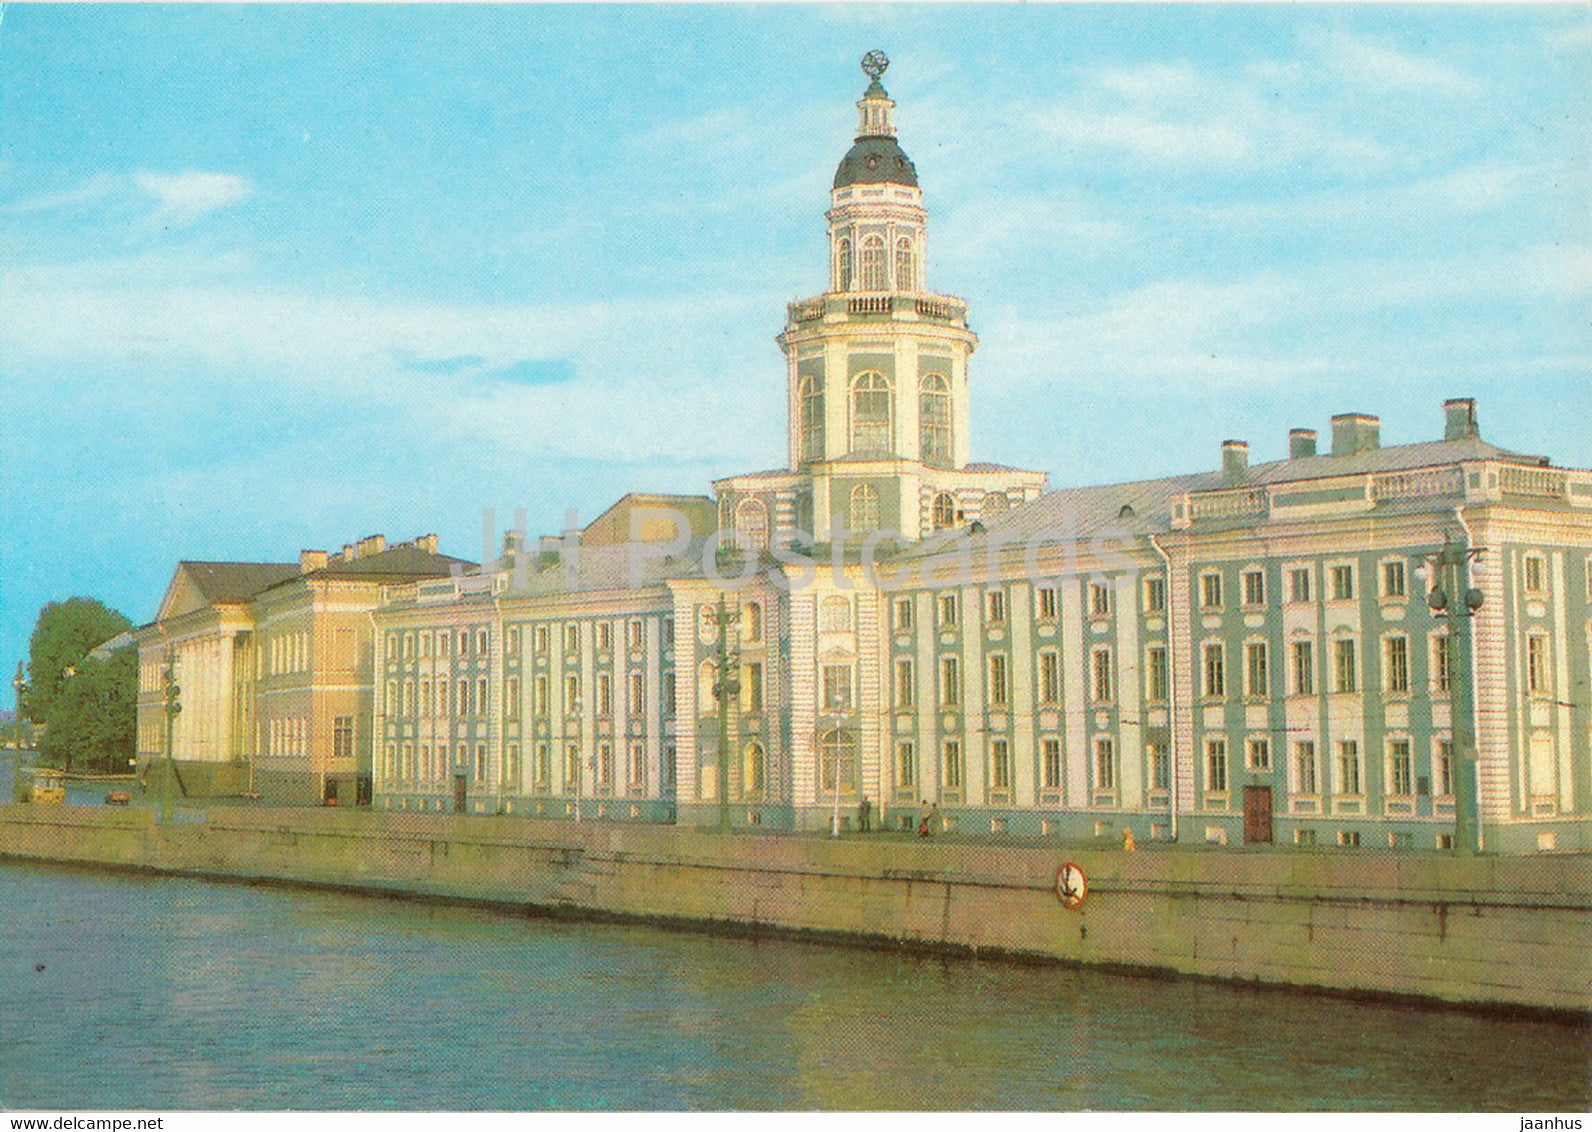 Leningrad - St Petersburg - Kunstkamera - Museum - postal stationery - 1 - 1991 - Russia USSR - unused - JH Postcards